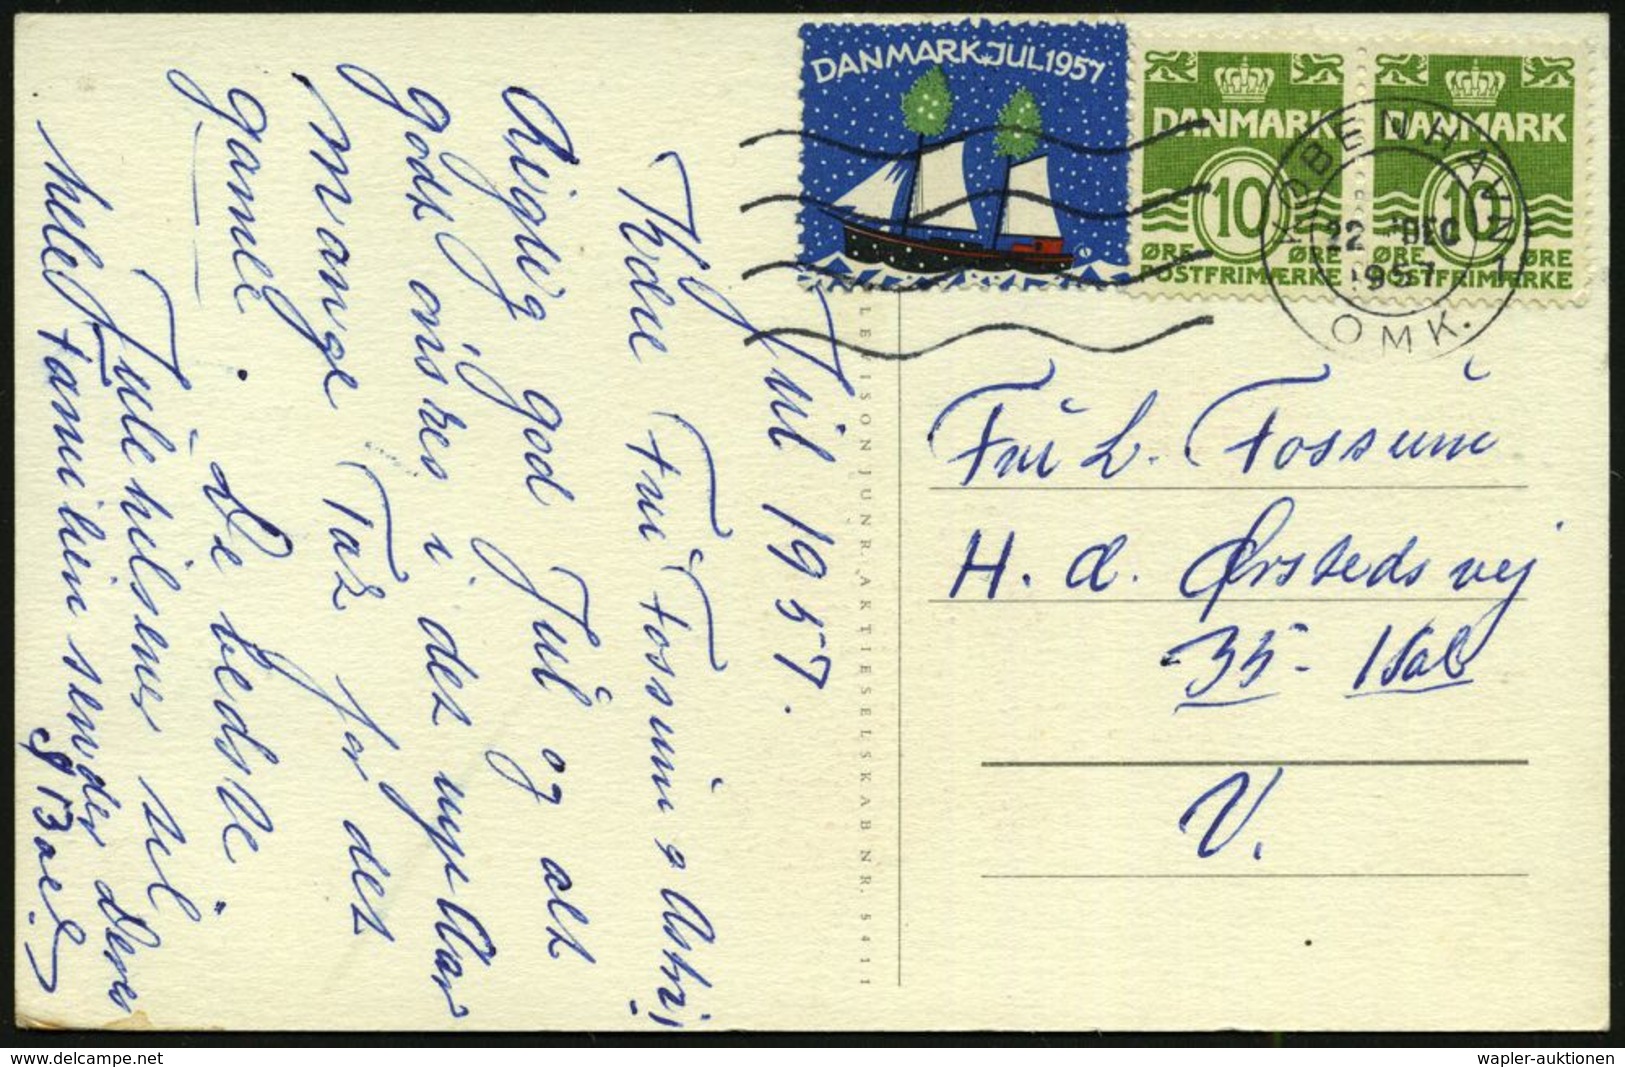 TUBERKULOSE / TBC-VORSORGE : DÄNEMARK 1957 (22.12.) 10 Öre Freimarke, Paar + Weihnachts-Tbc-Spendenmarke (Segelschiff) A - Malattie